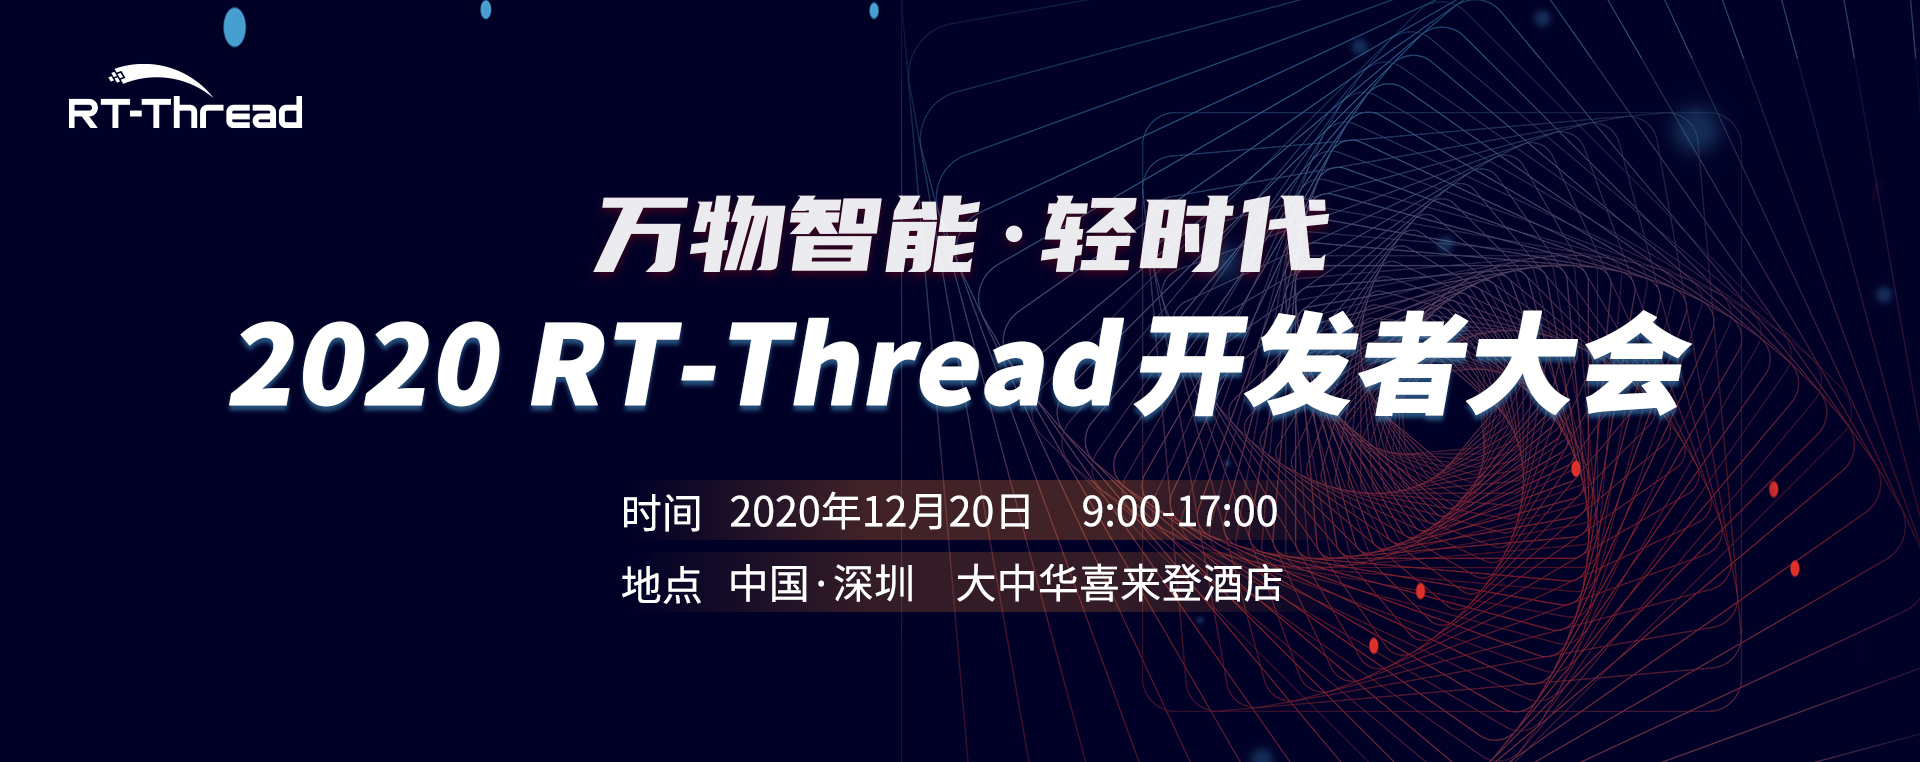 RT-Thread 开发者大会RDC 2020